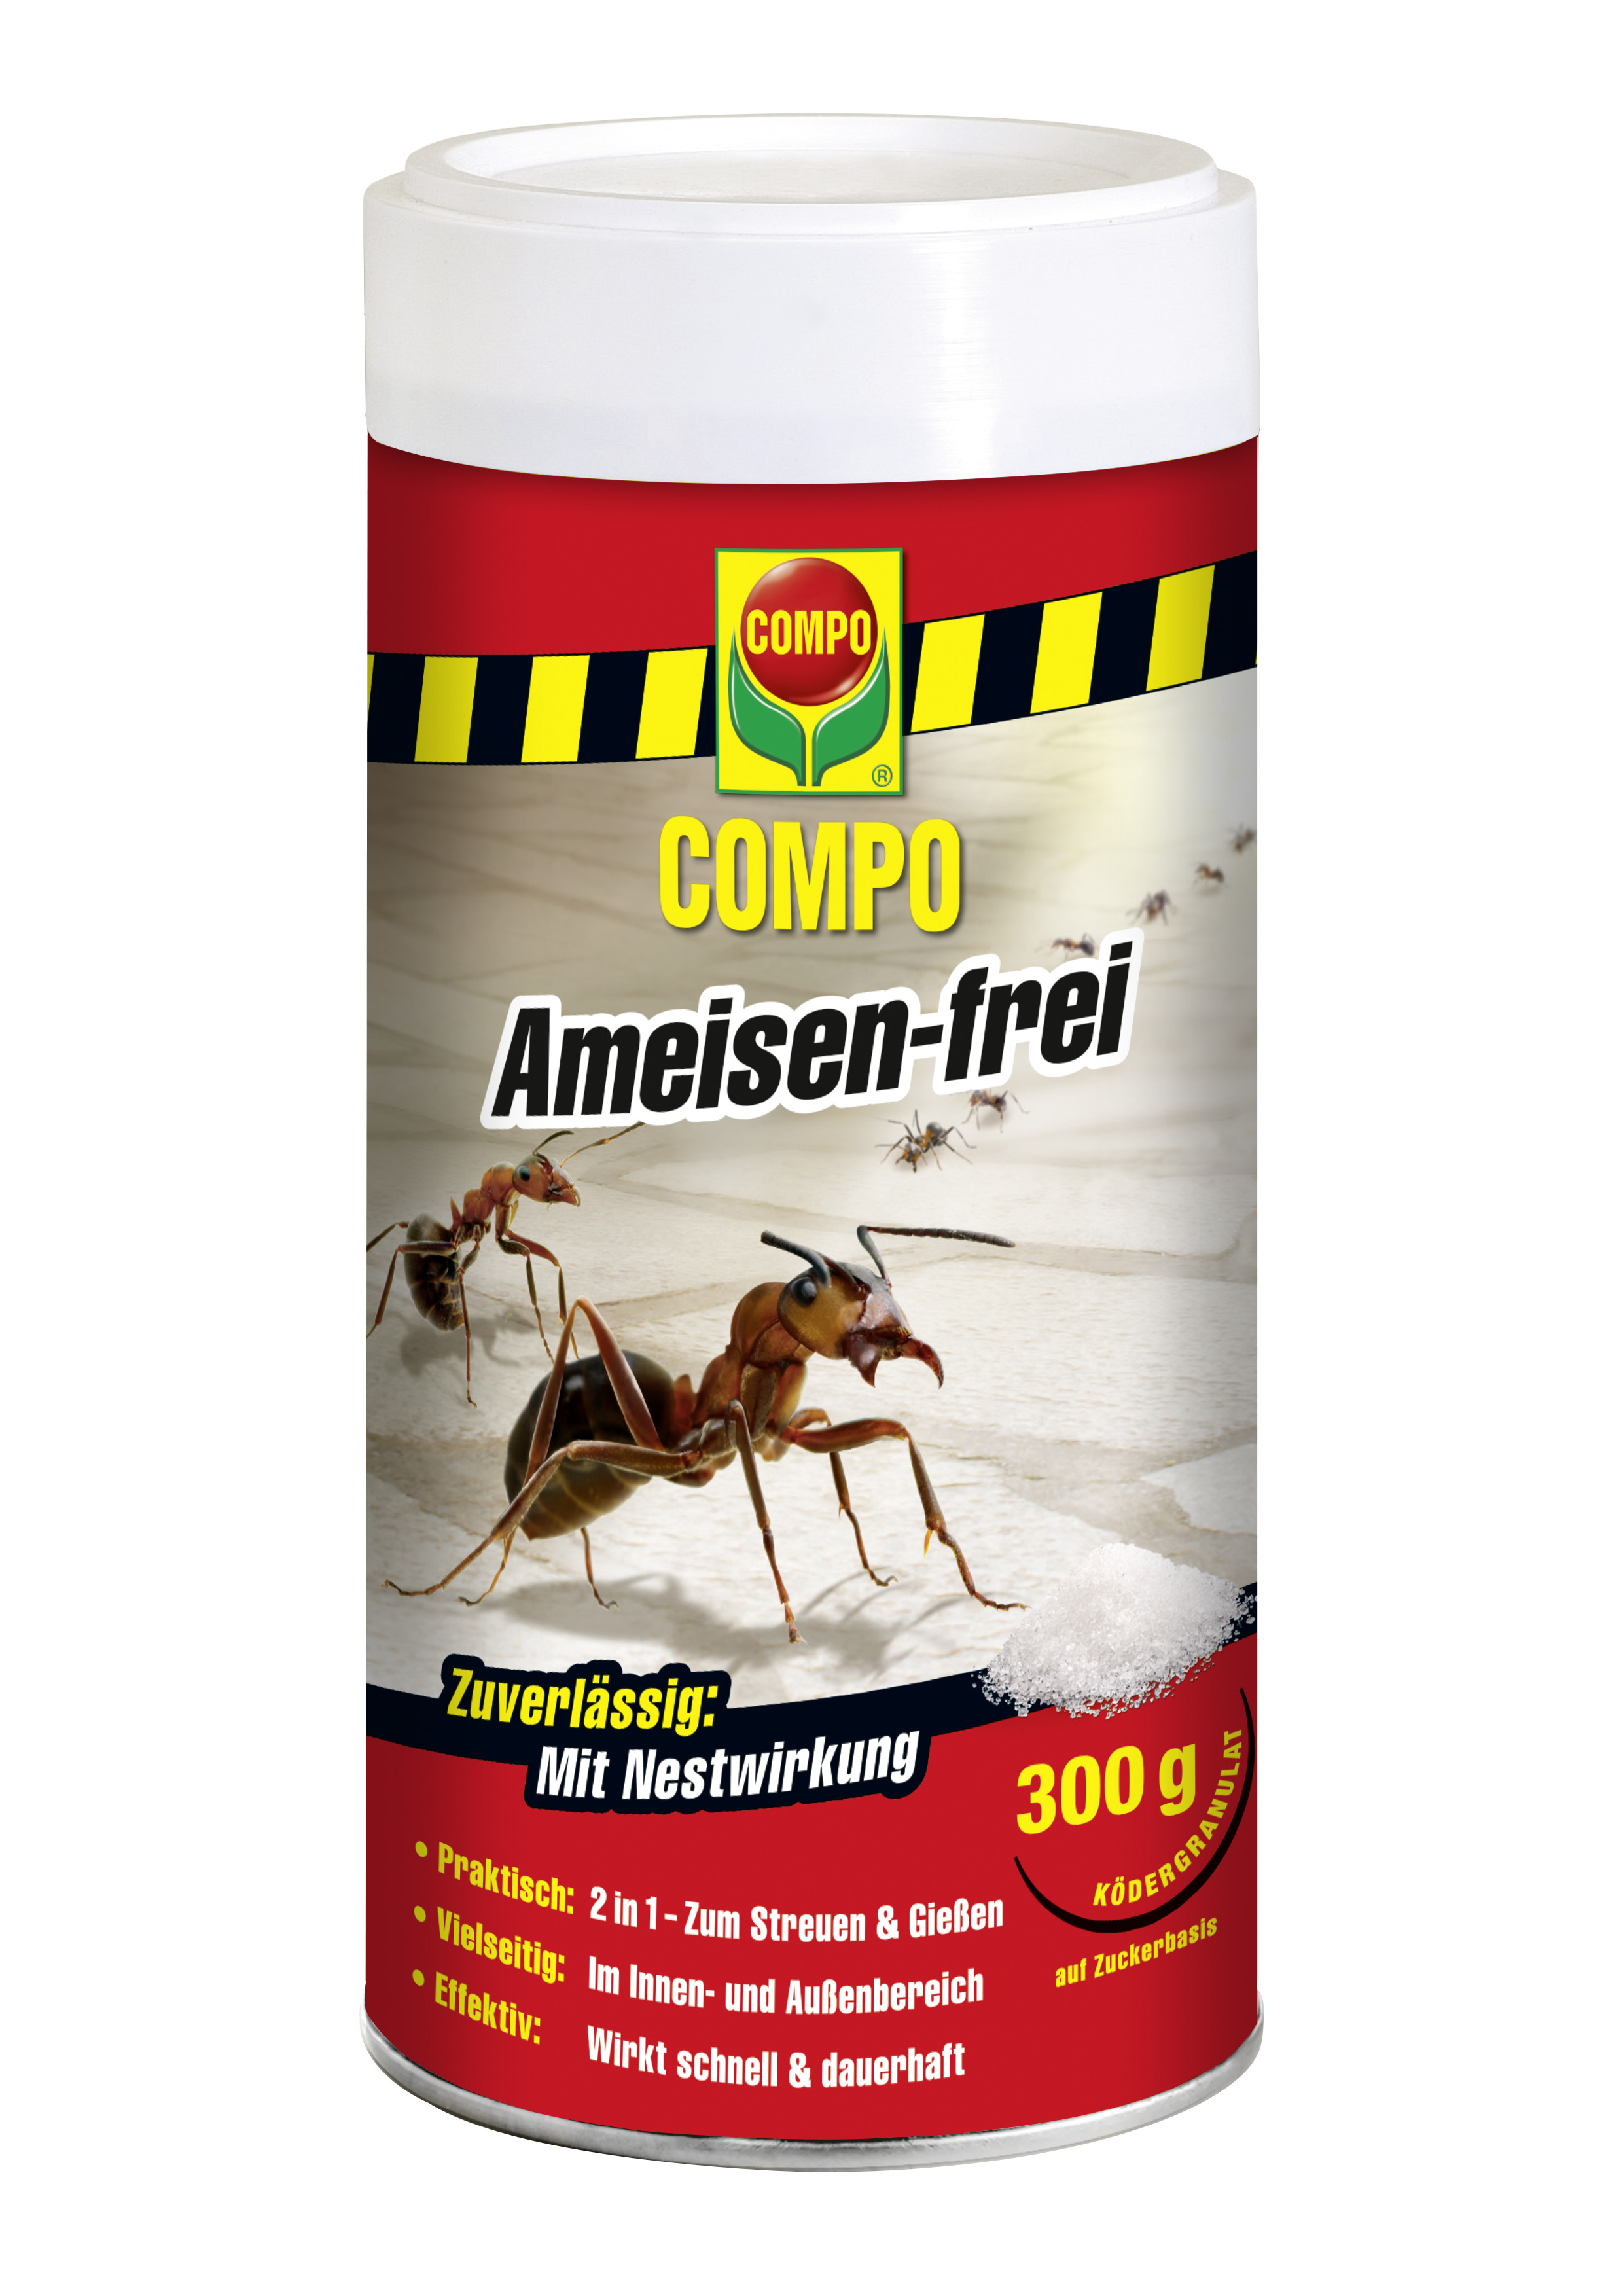 Compo Ameisen-frei, 300 g